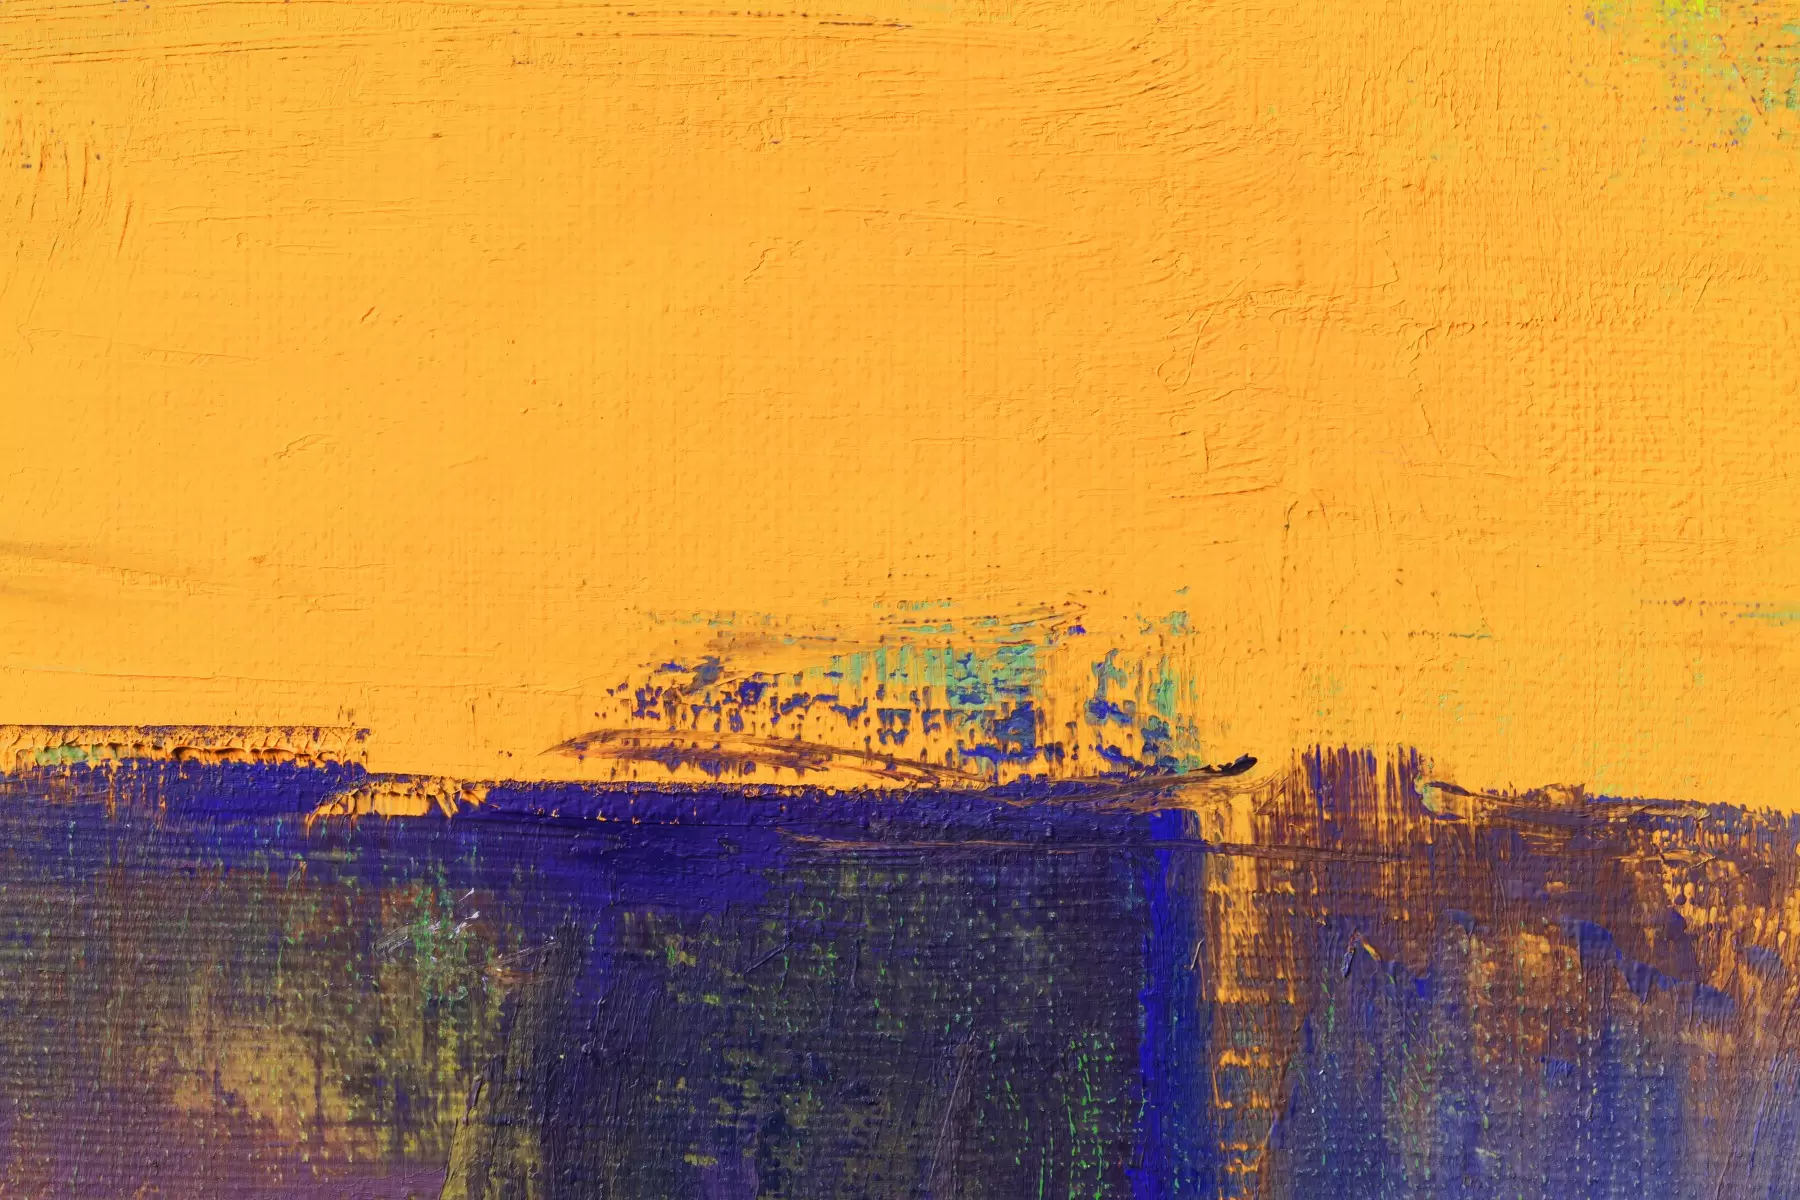 אופק כחול וצהוב - Artpicked - סלון בסגנון מינימליסטי נוף וטבע מופשט  - מק''ט: 334594